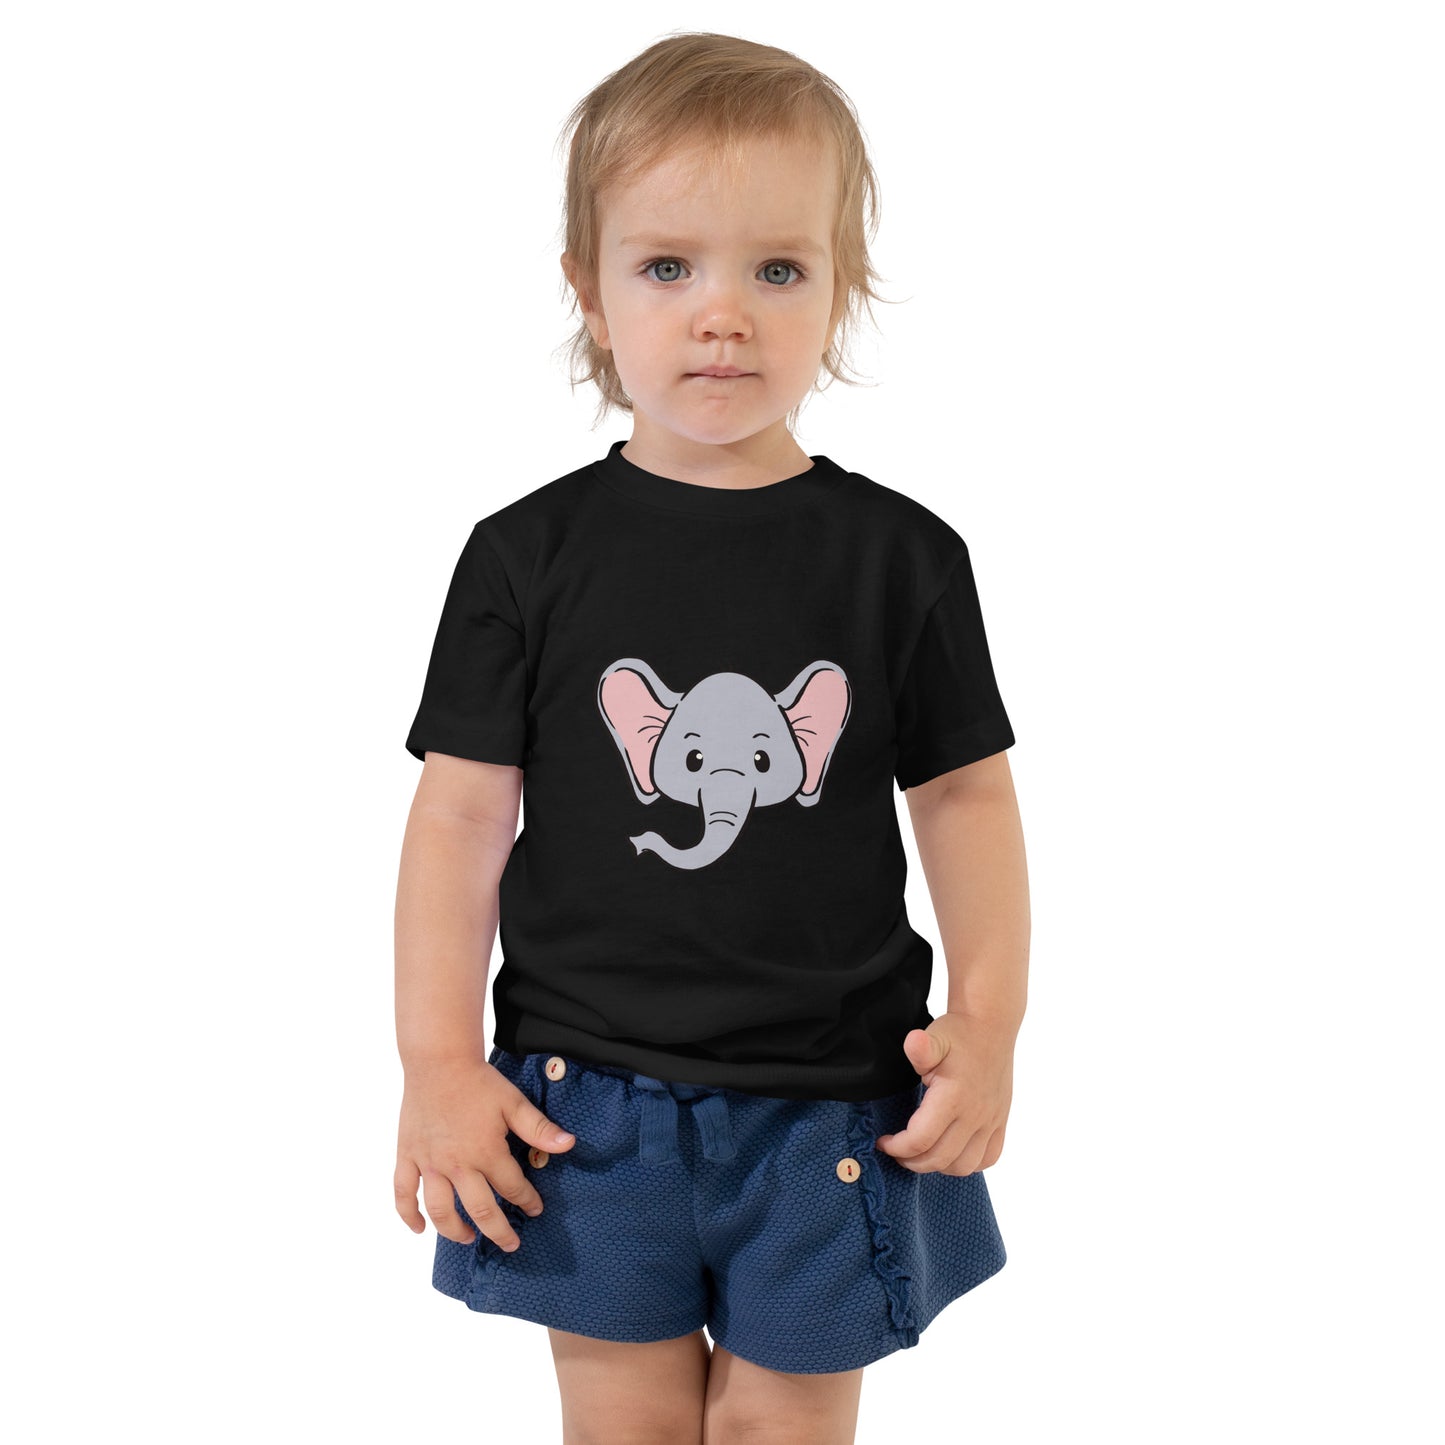 فيل - قميص بأكمام قصيرة للأطفال